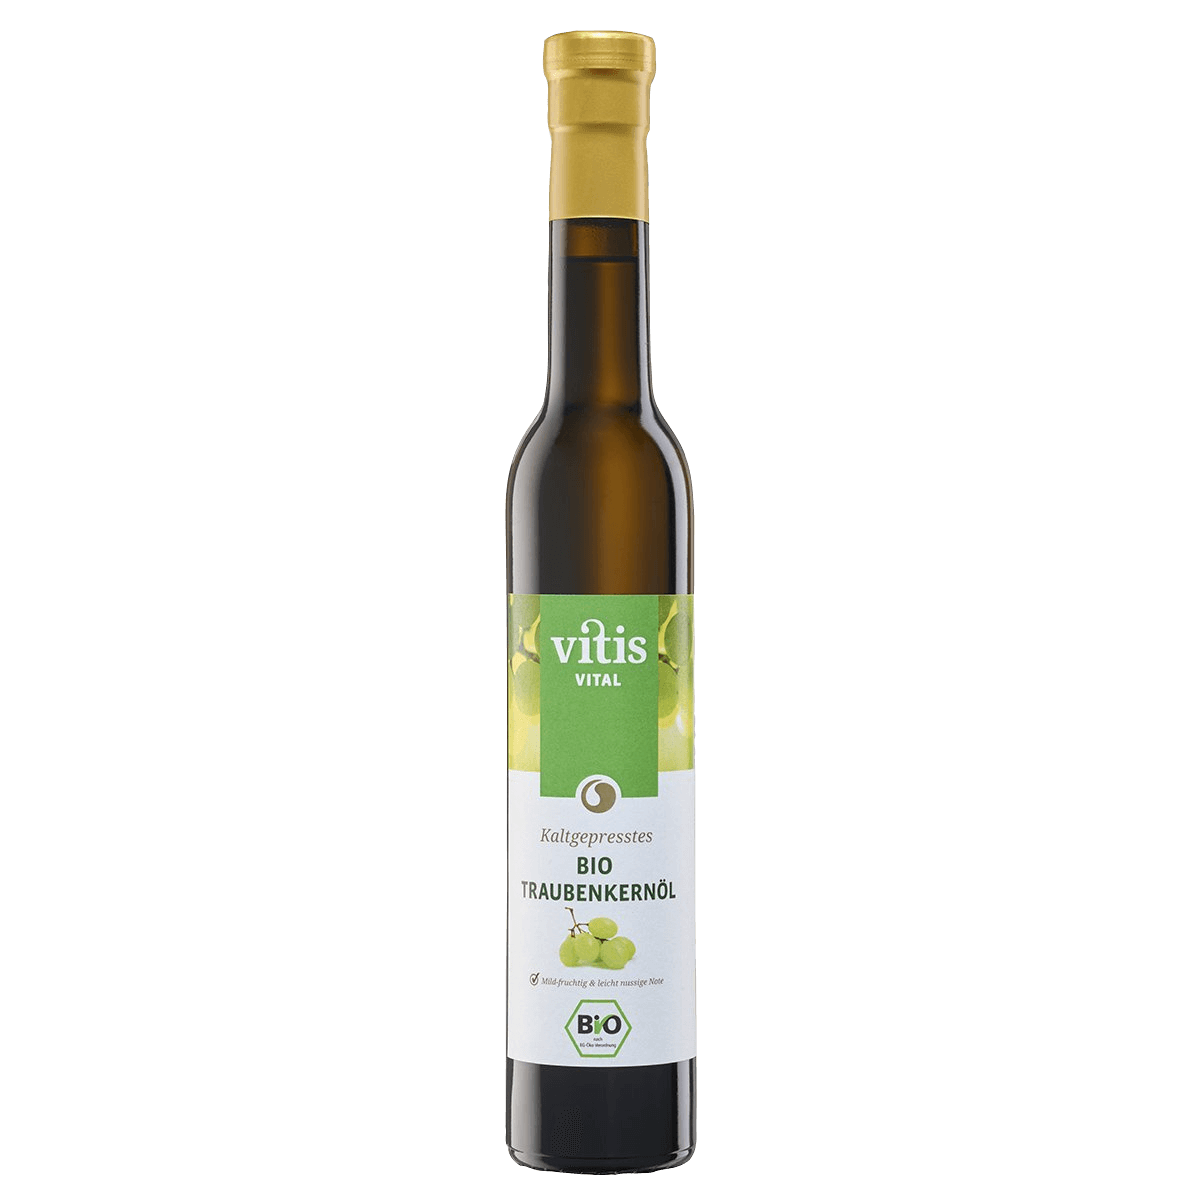 Eine Flasche Bio Traubenkernöl von der Firma Vitis Traubenkern GmbH. Verkauft wird sie bei Vitis24 auf der Website.